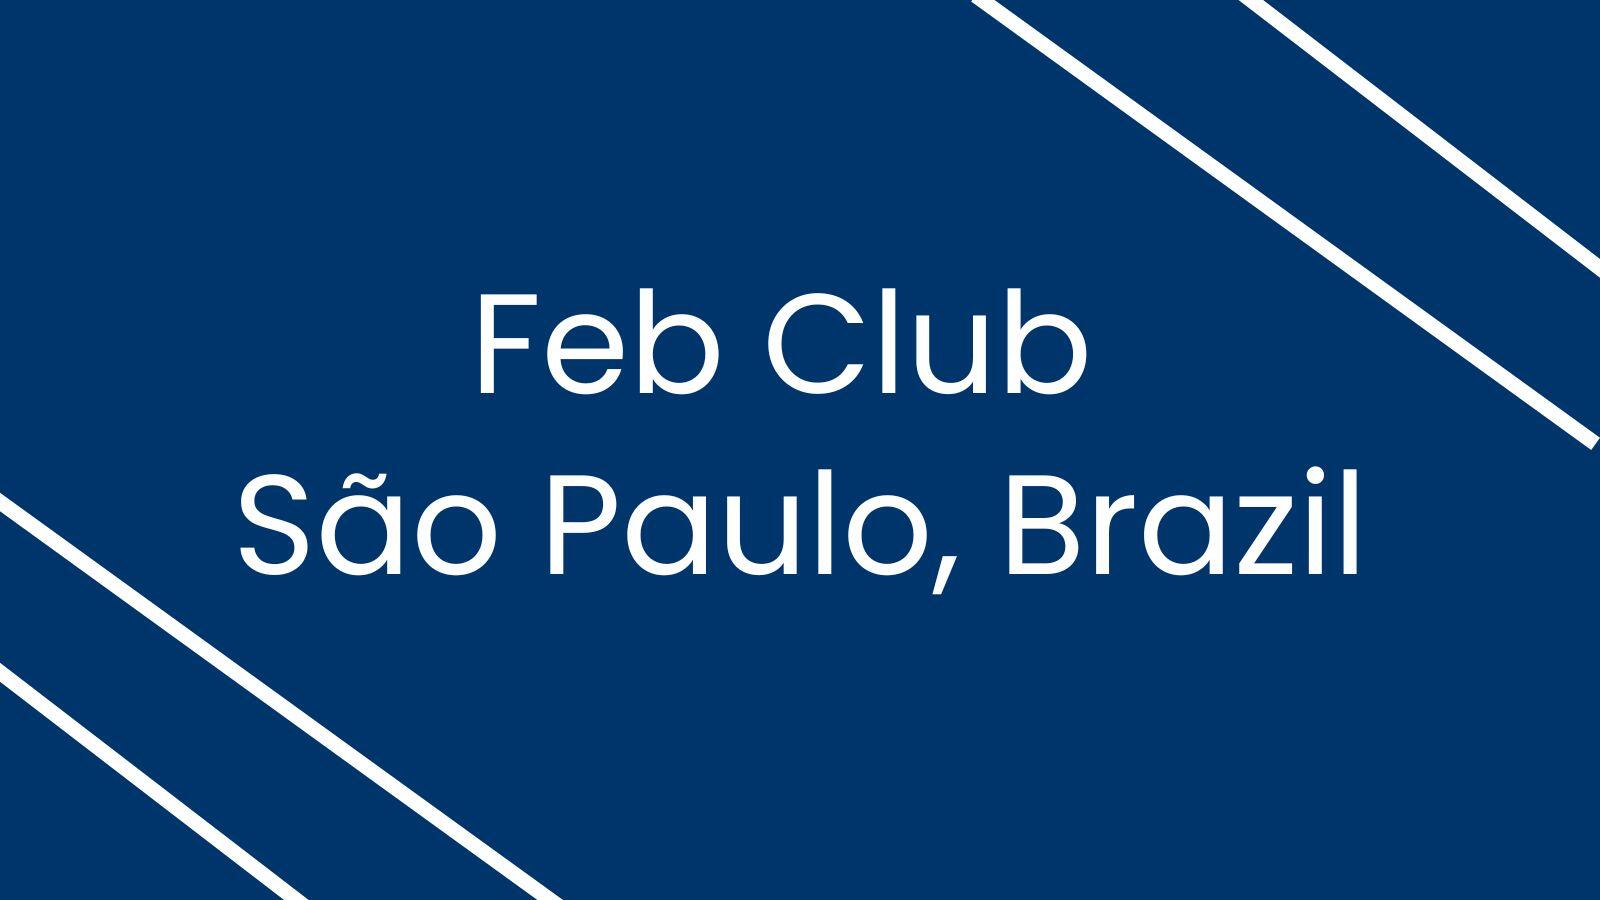 Feb Club - São Paulo, Brazil